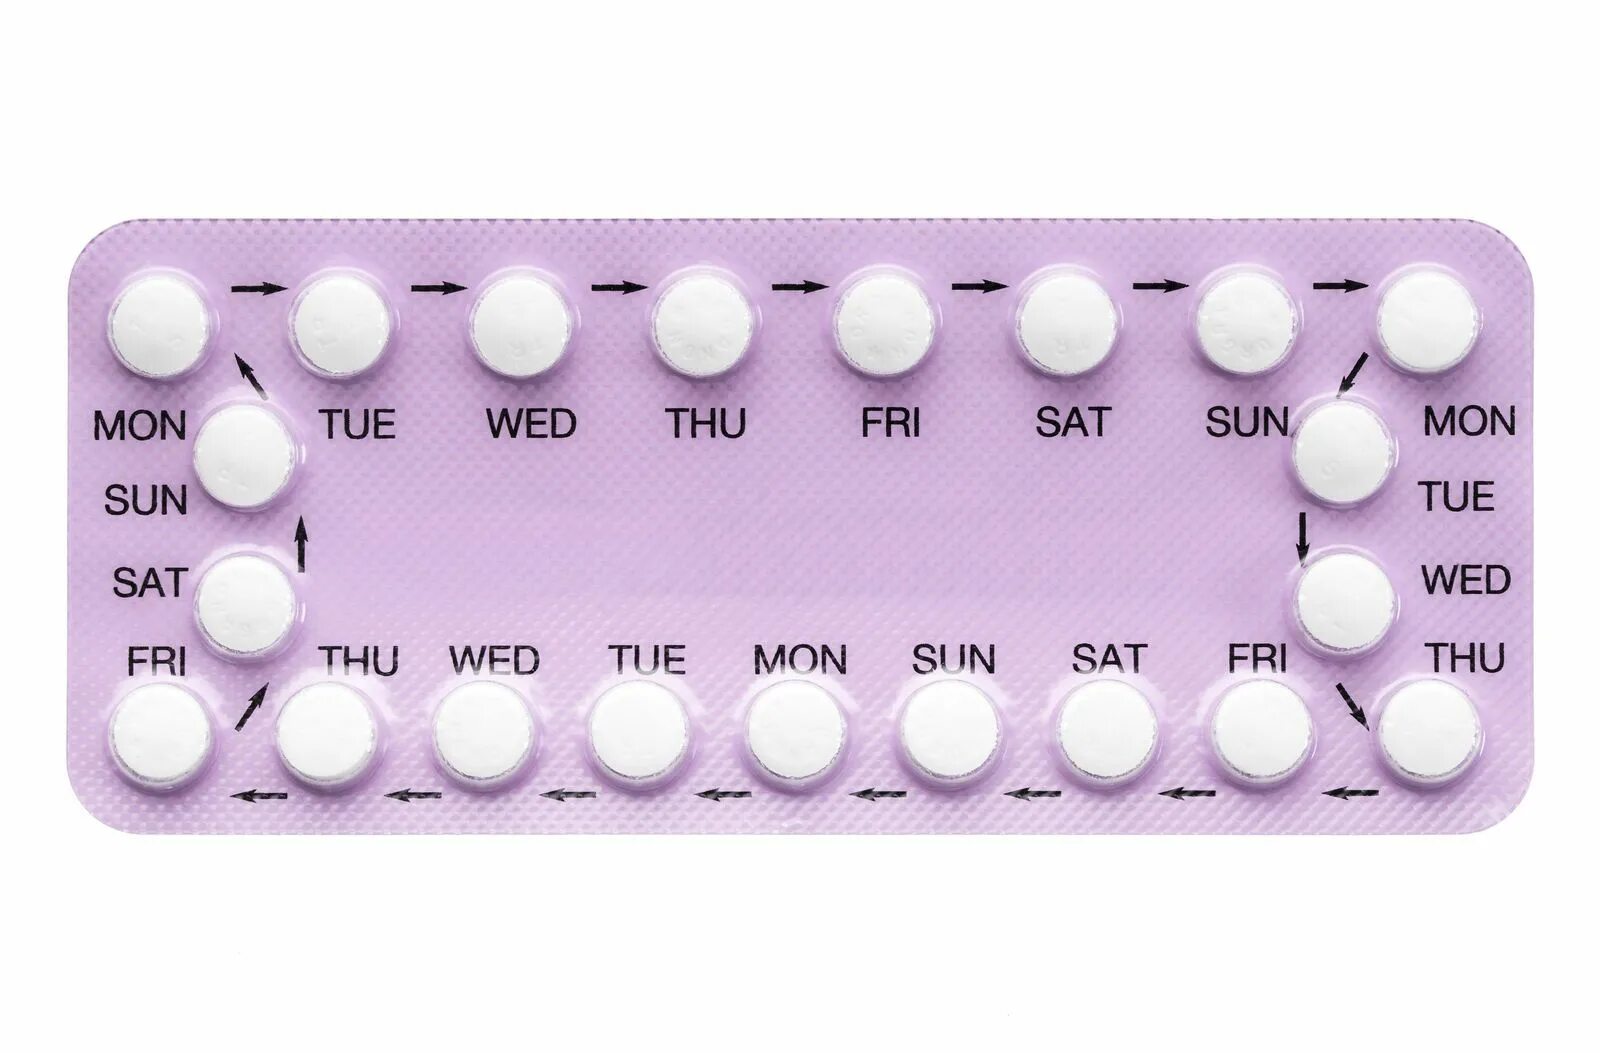 Противозачаточные таблетки для мужчин название. Противозачаточные оральные контрацептивы. Противозачаточные таблетки для женщин. Комбинированные оральные контрацептивы. Комбинированные противозачаточные препараты.